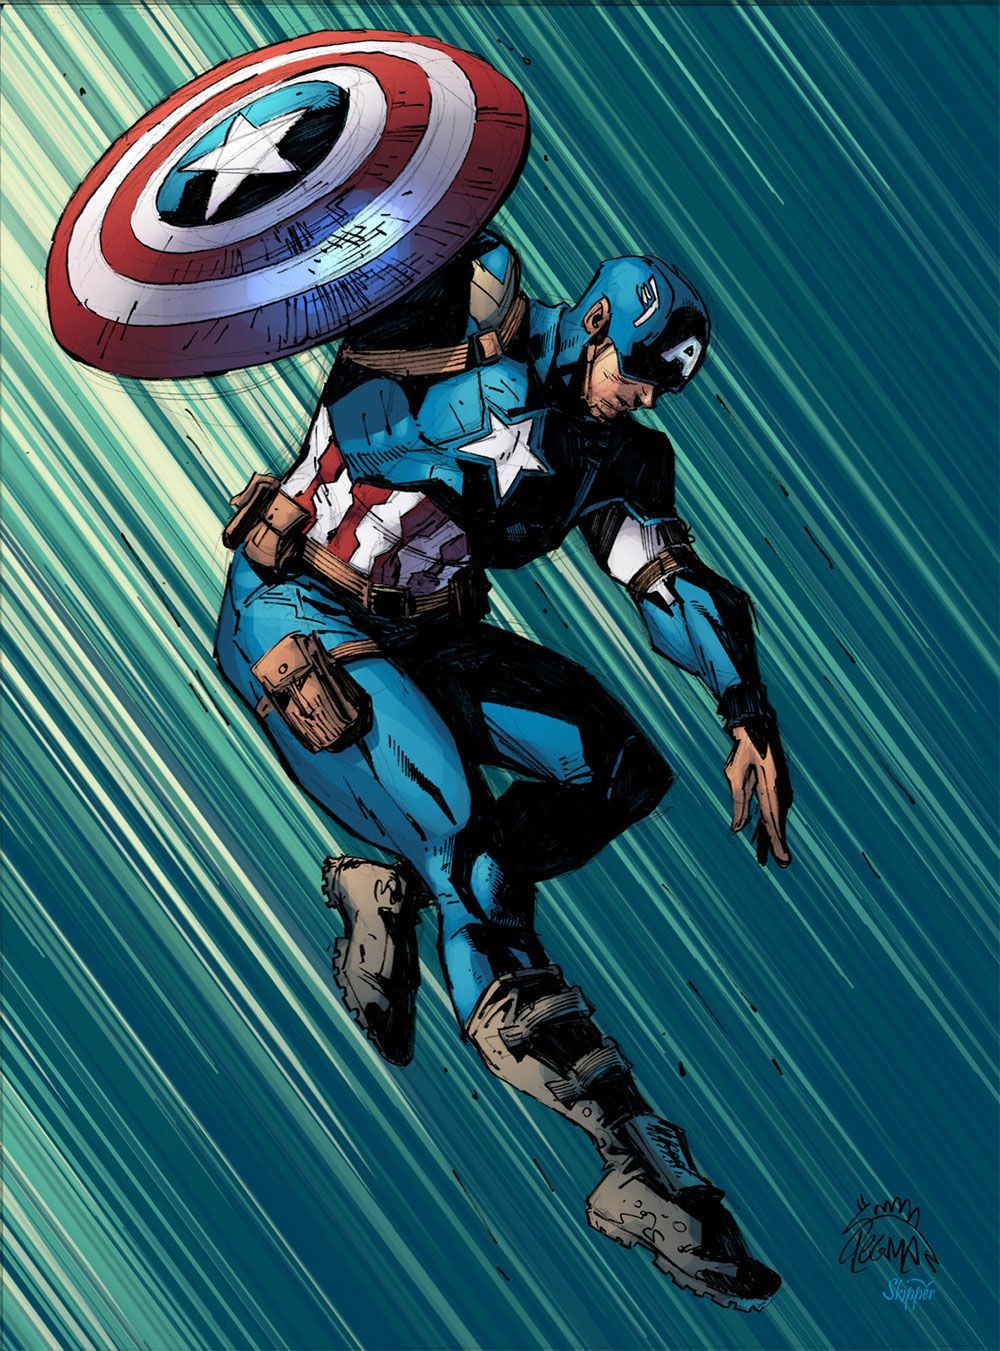 Pridobite temu človeku ščit: 10 najboljših umetniških del Captain America na internetu